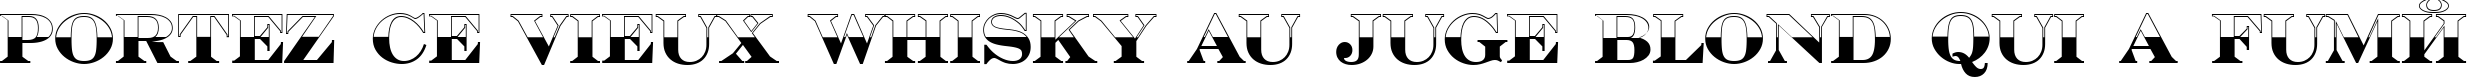 Пример написания шрифтом a_SeriferTitulB&W Bold текста на французском